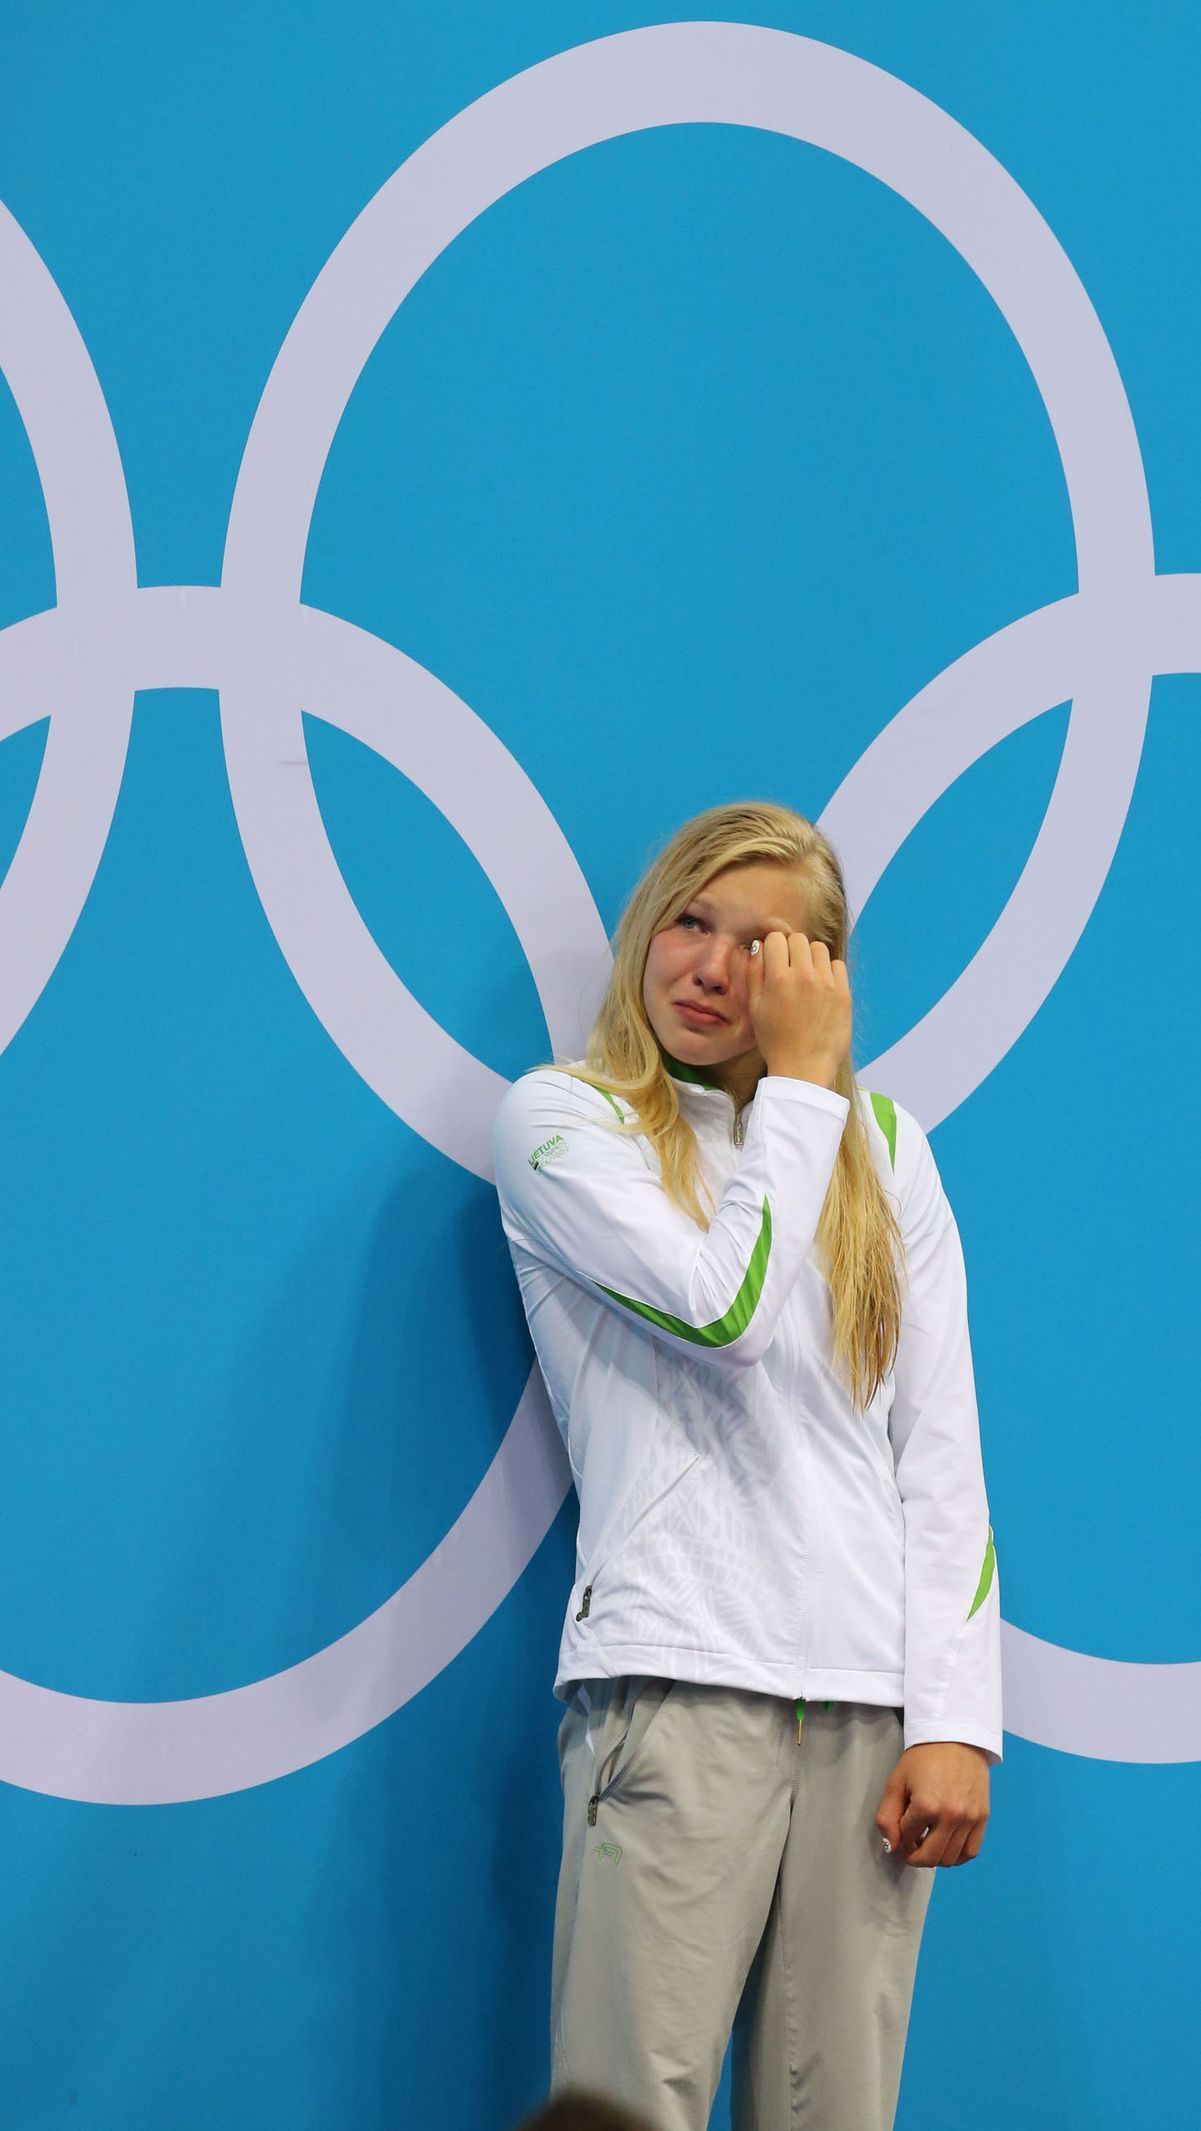 Litevská plavkyně Ruta Meilutyteová při medailovém ceremoniálu na OH v Londýně 2012